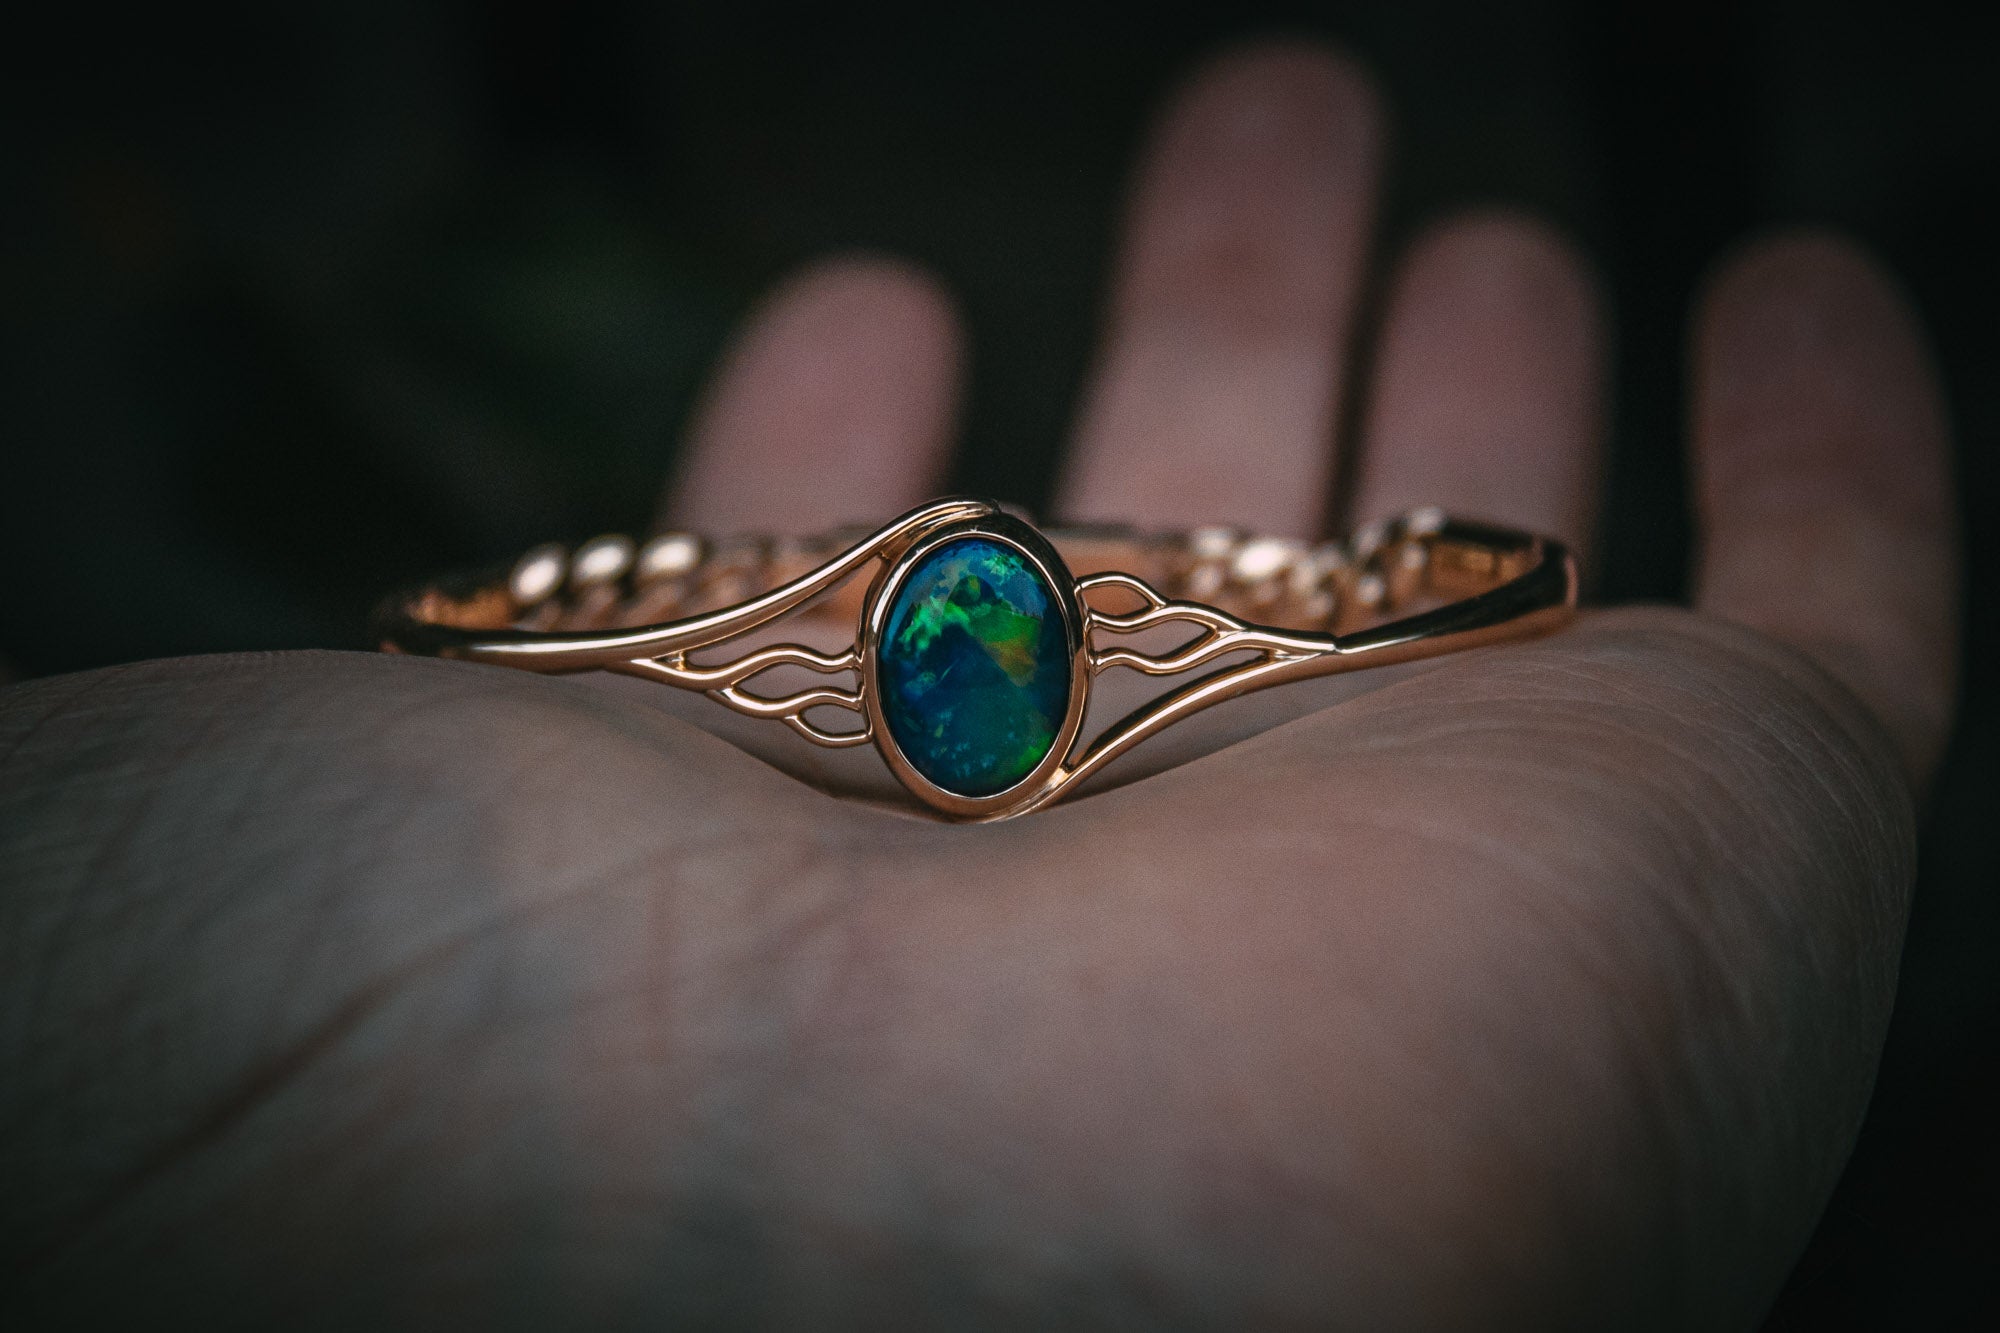 Bespoke opal bracelet